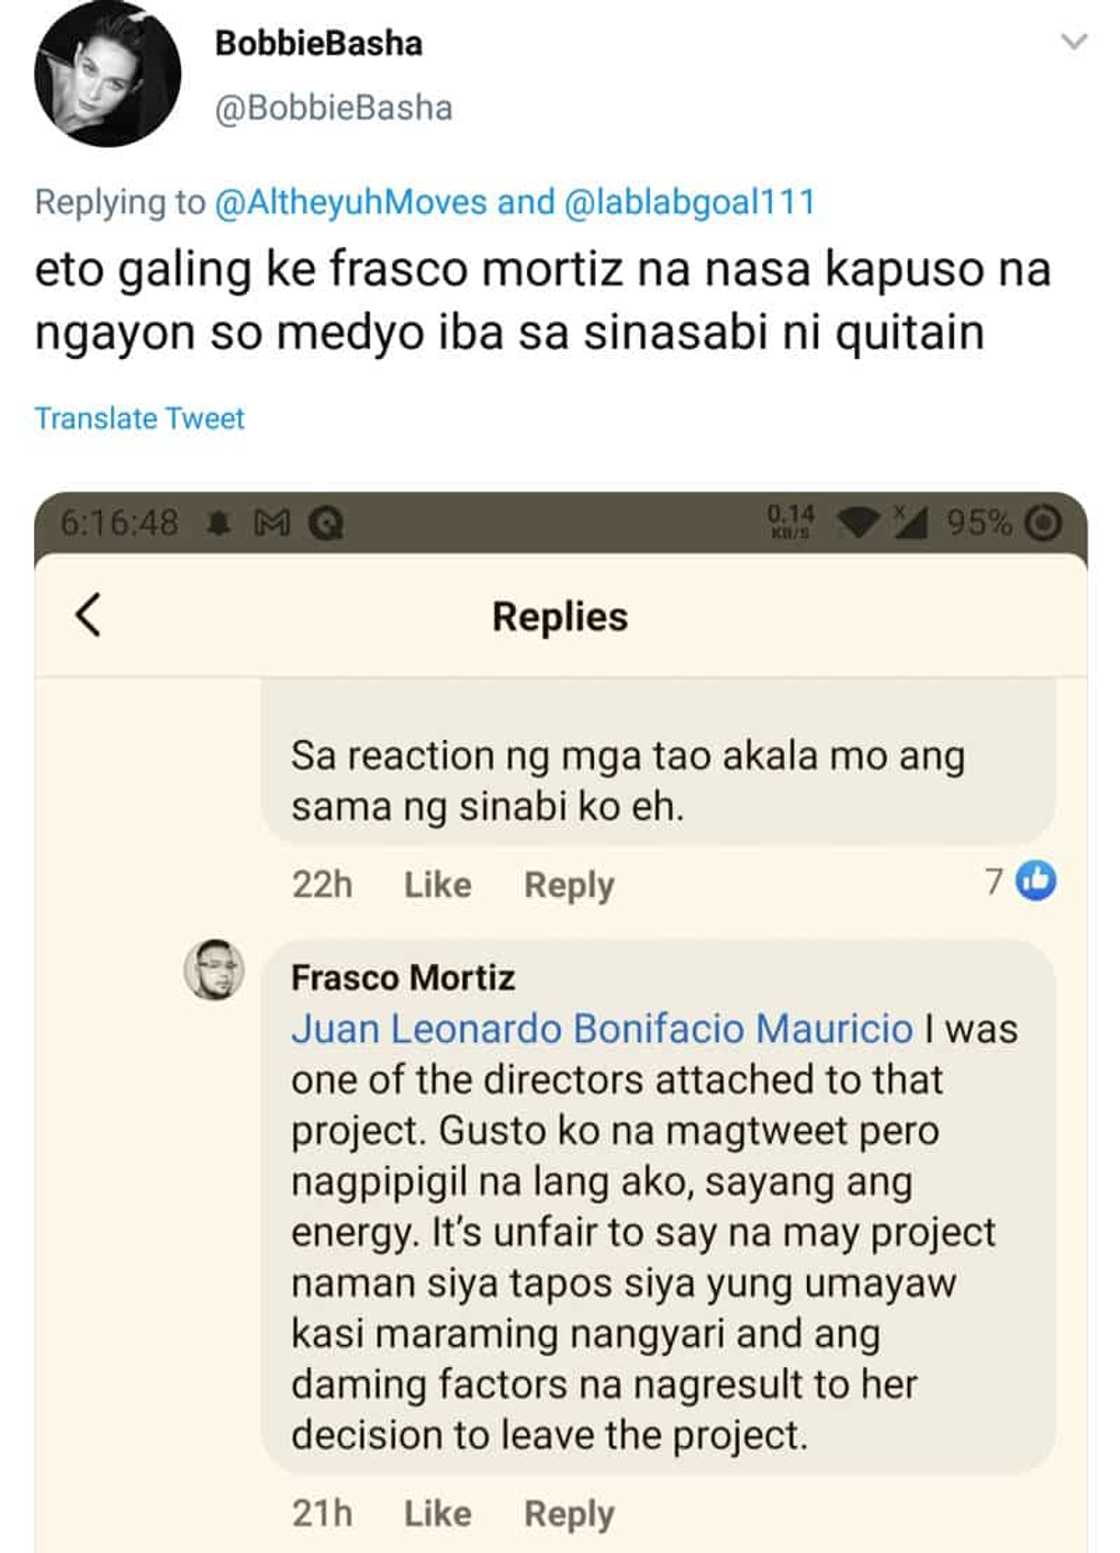 Frasco Mortiz, tinawag na "unfair" ang sabihing may project ang isang aktres pero inayawan lang